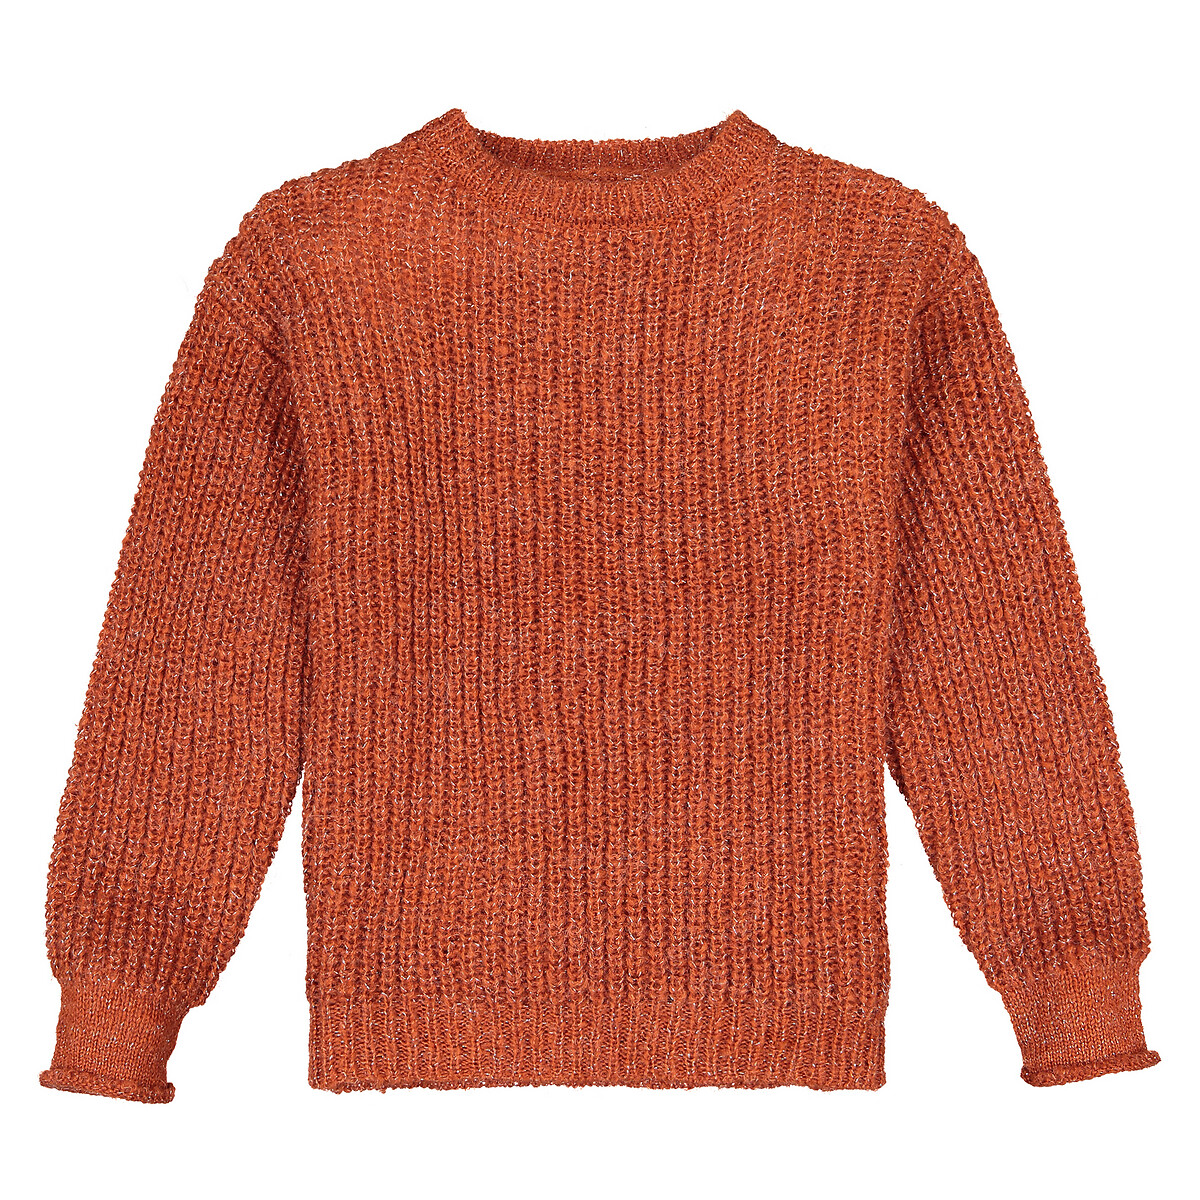 Пуловер La Redoute С круглым вырезом из трикотажа крупной вязки  5 лет - 108 см каштановый, размер 5 лет - 108 см - фото 2